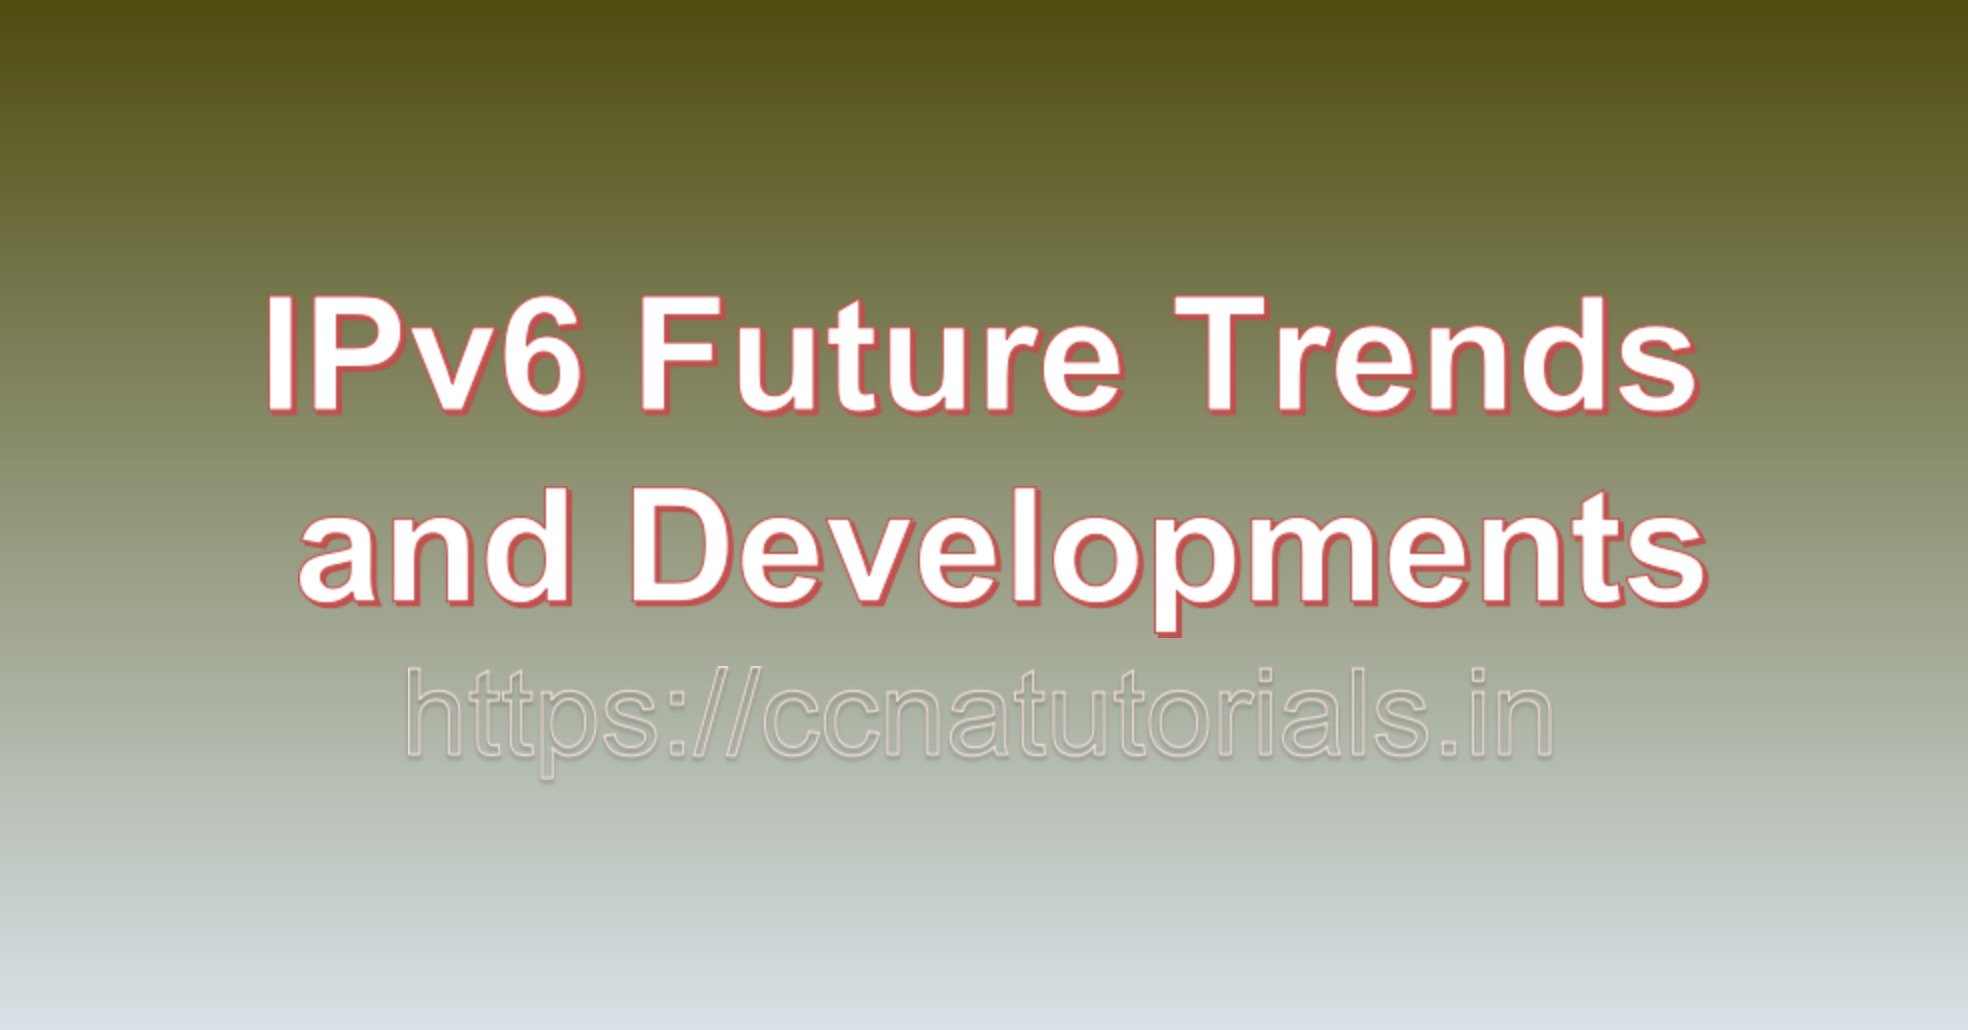 IPv6 Future Trends and Developments, ccna, ccna tutorials